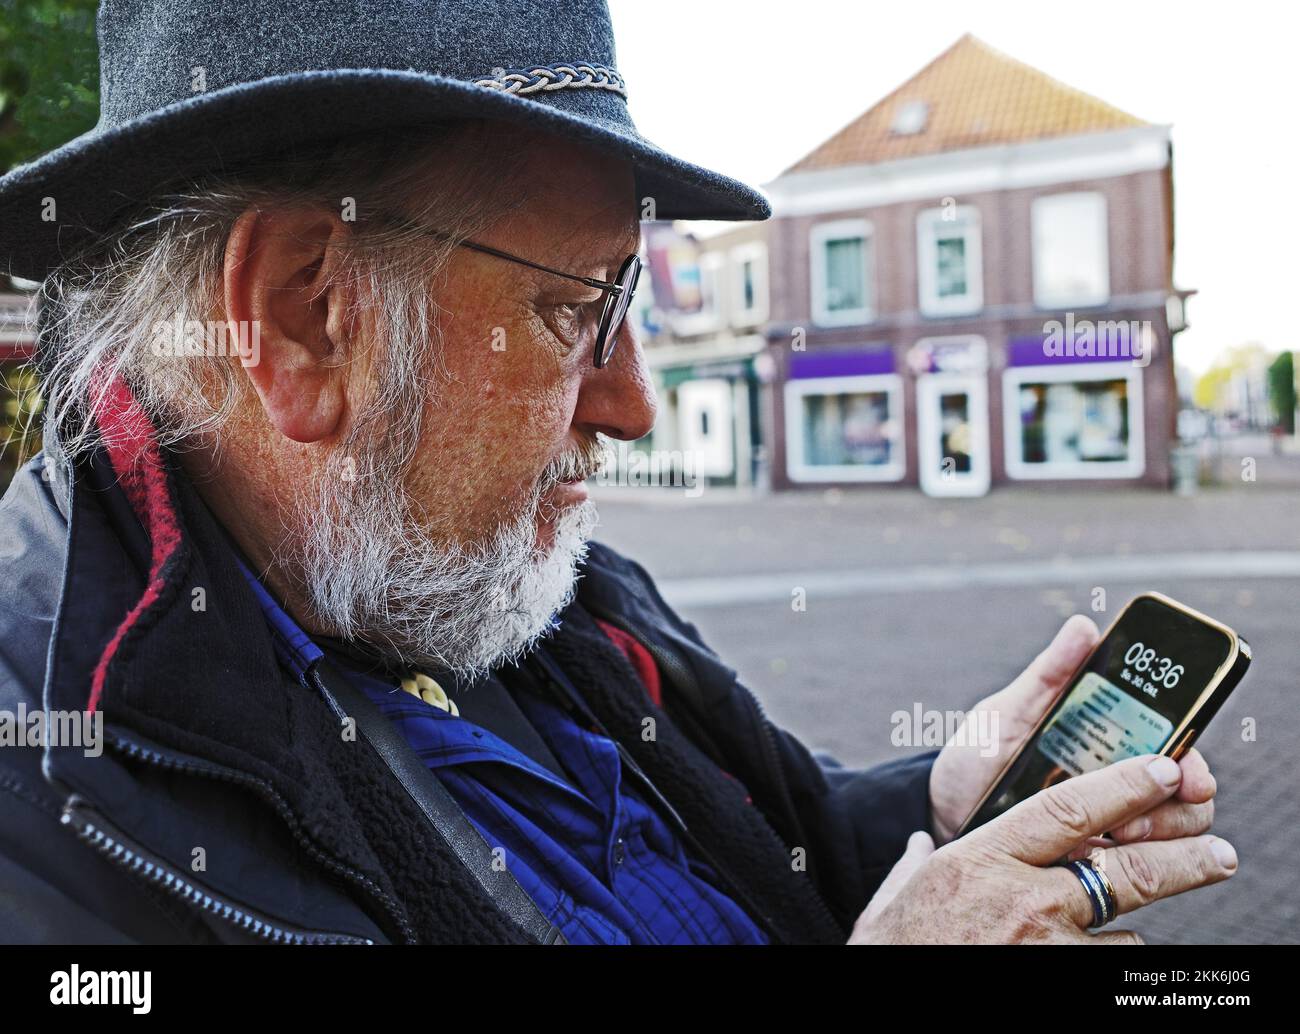 Un hombre mayor con sombrero está comprobando su smartphone. Se encuentra en el centro de la histórica ciudad de Coevorden en los Países Bajos Foto de stock